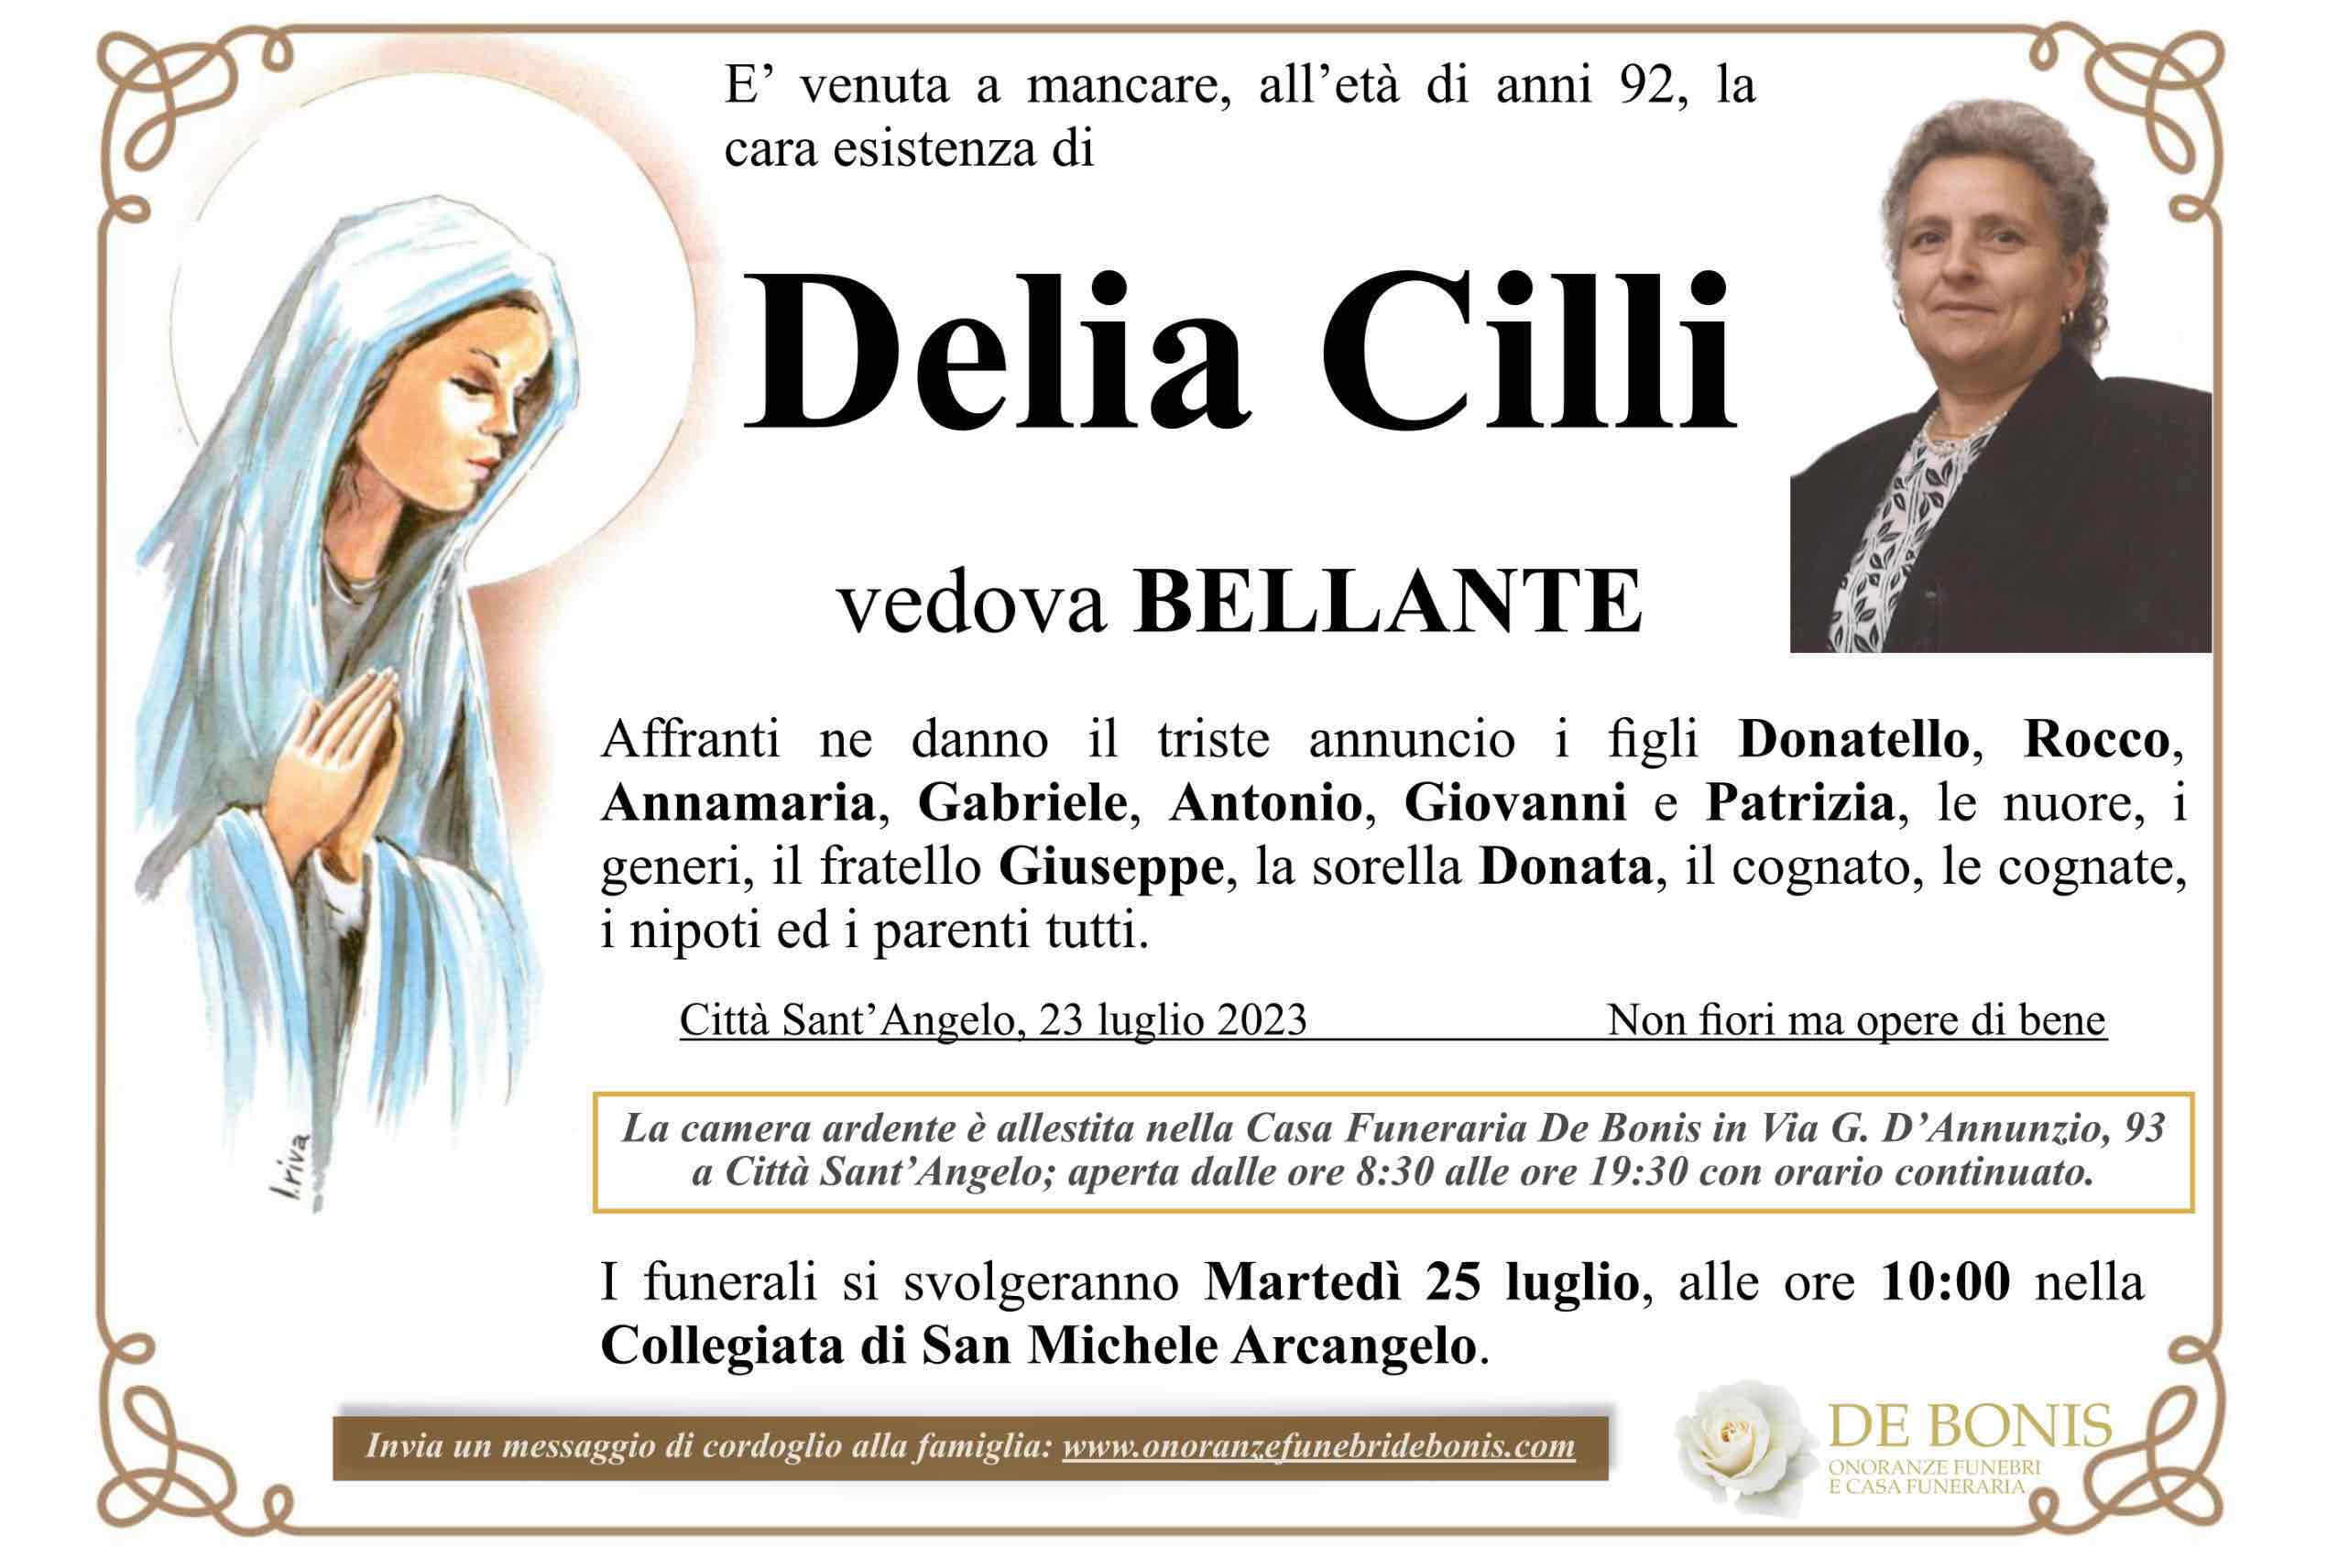 Delia Cilli